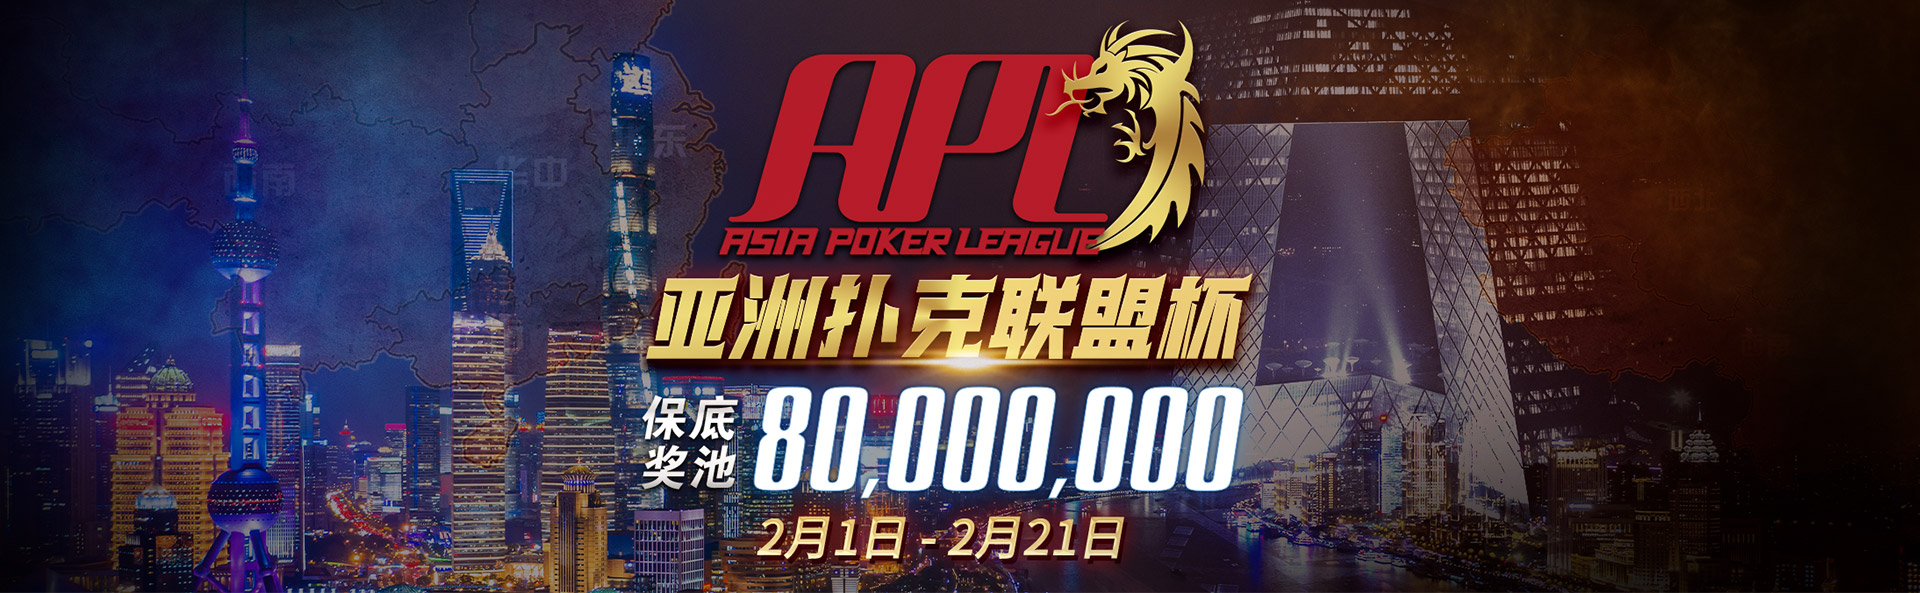 【蜗牛扑克】APL亚洲扑克联盟杯强势登场 2月1日正式启动